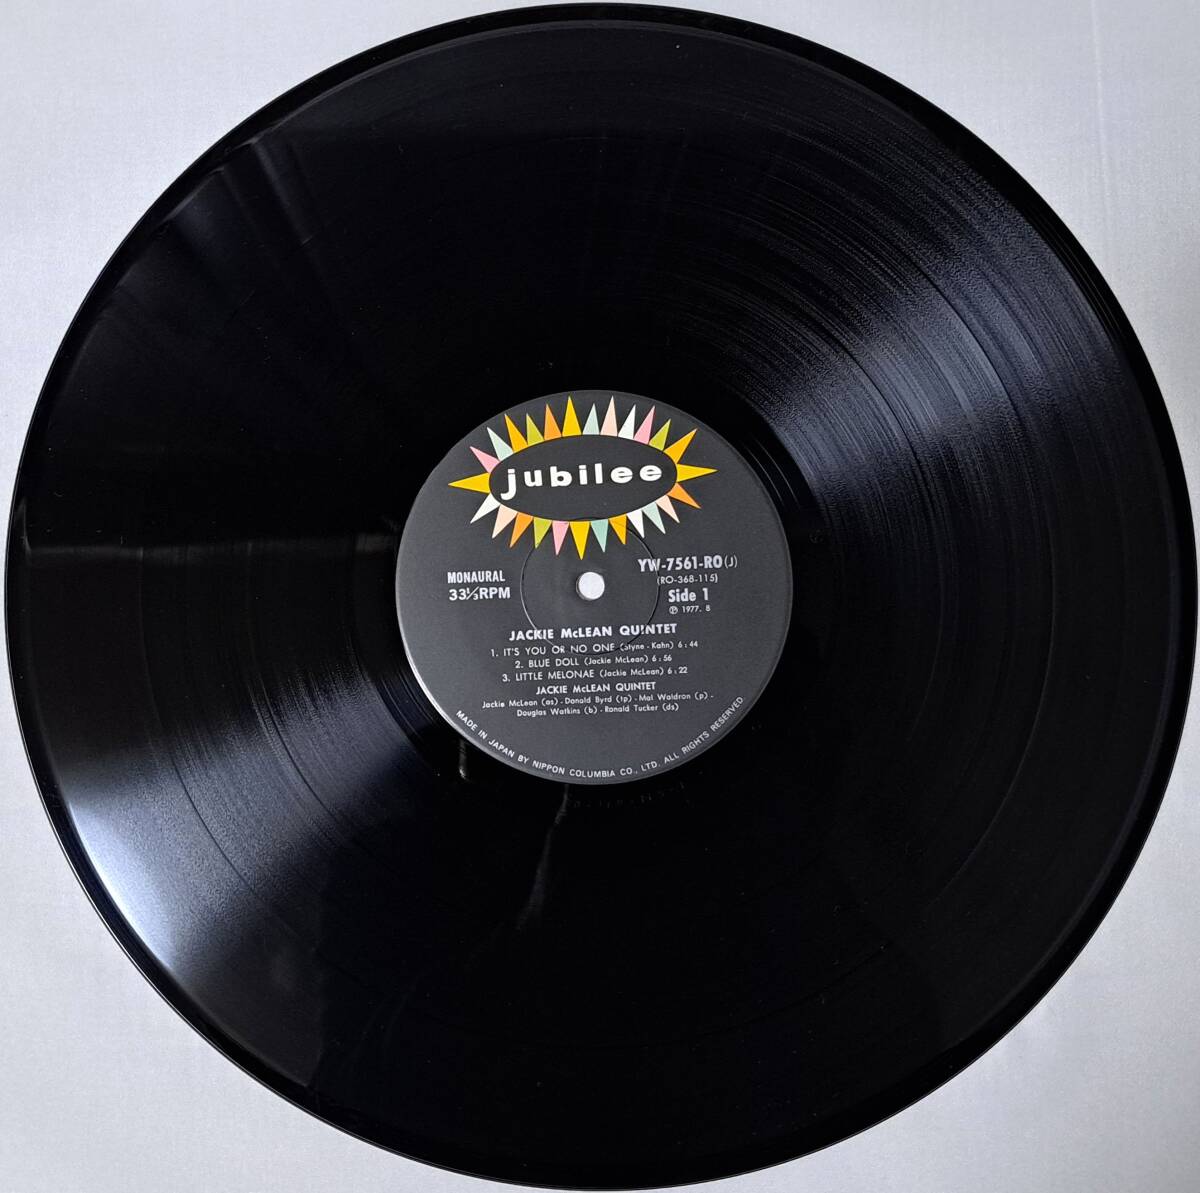 THE JACKIE MCLEAN QUINTET : ジャッキー・マクリーン 帯なし 国内盤 中古 アナログ LPレコード盤 1977年 MONO / YW-7561-RO M2-KDO-1416_画像3